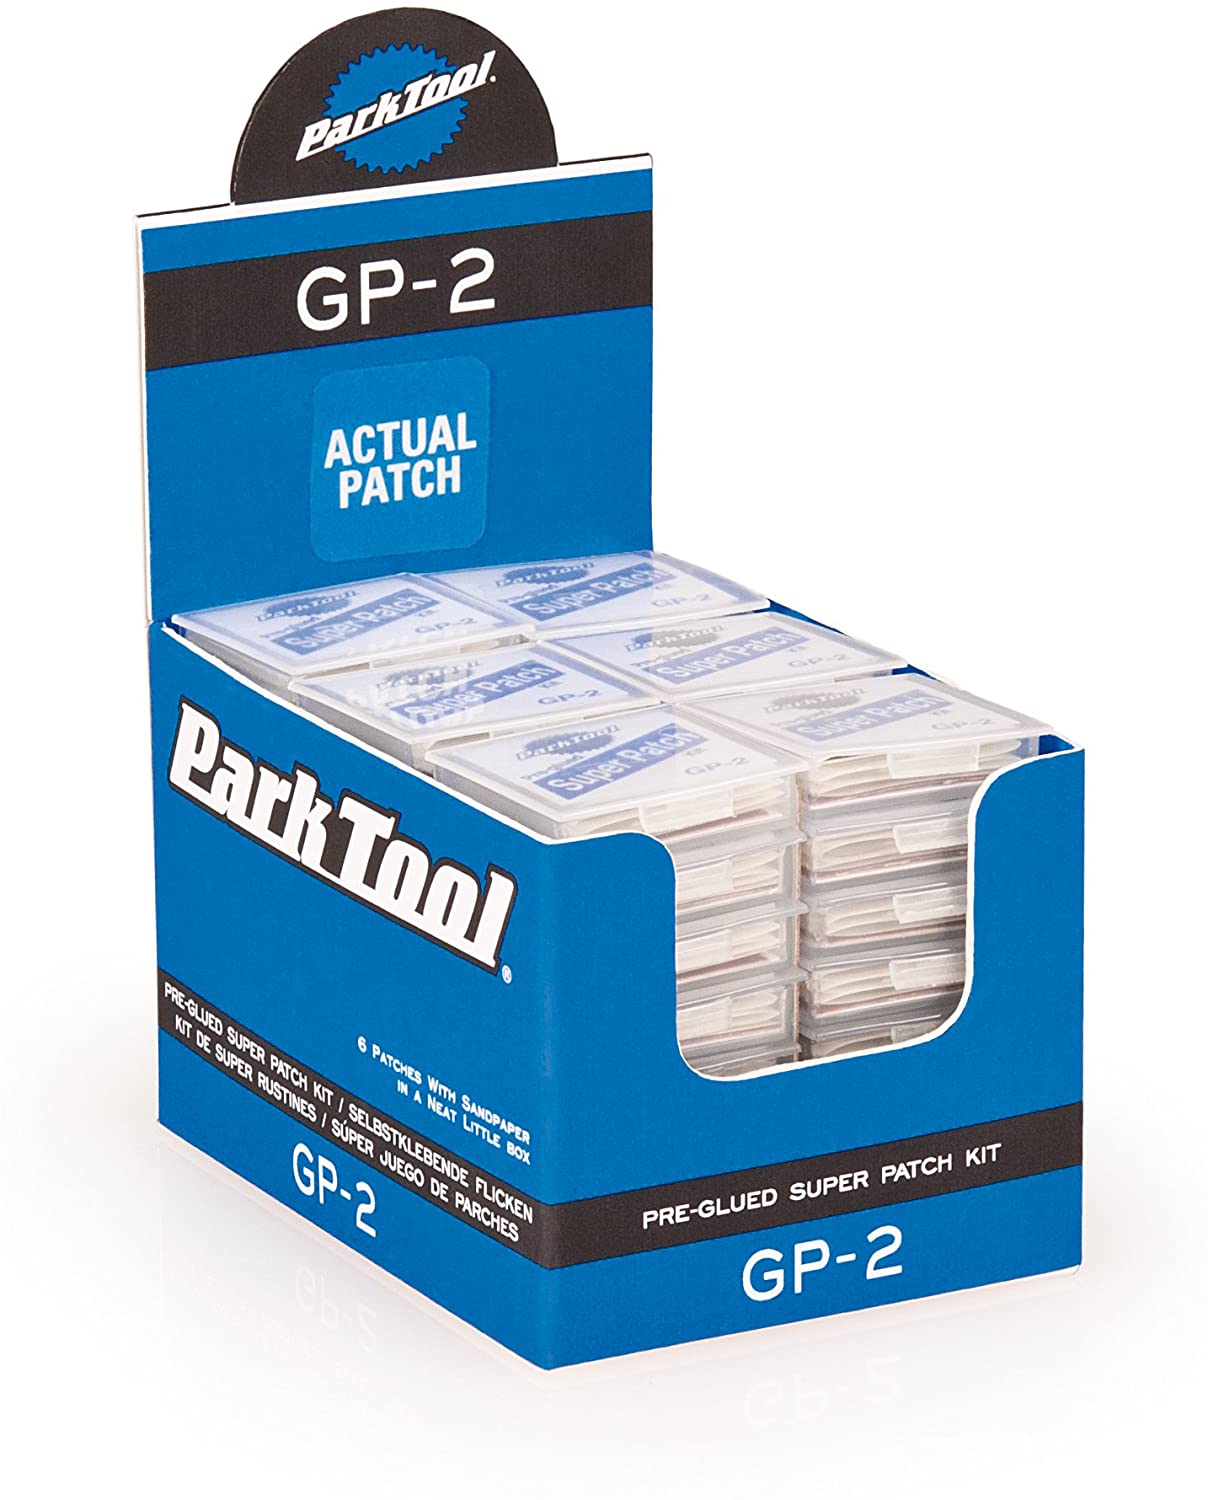 Латки Park Tool GP-2 самоклеящиеся для камер, в боксе 48 комплектов по 6 шт. фото 